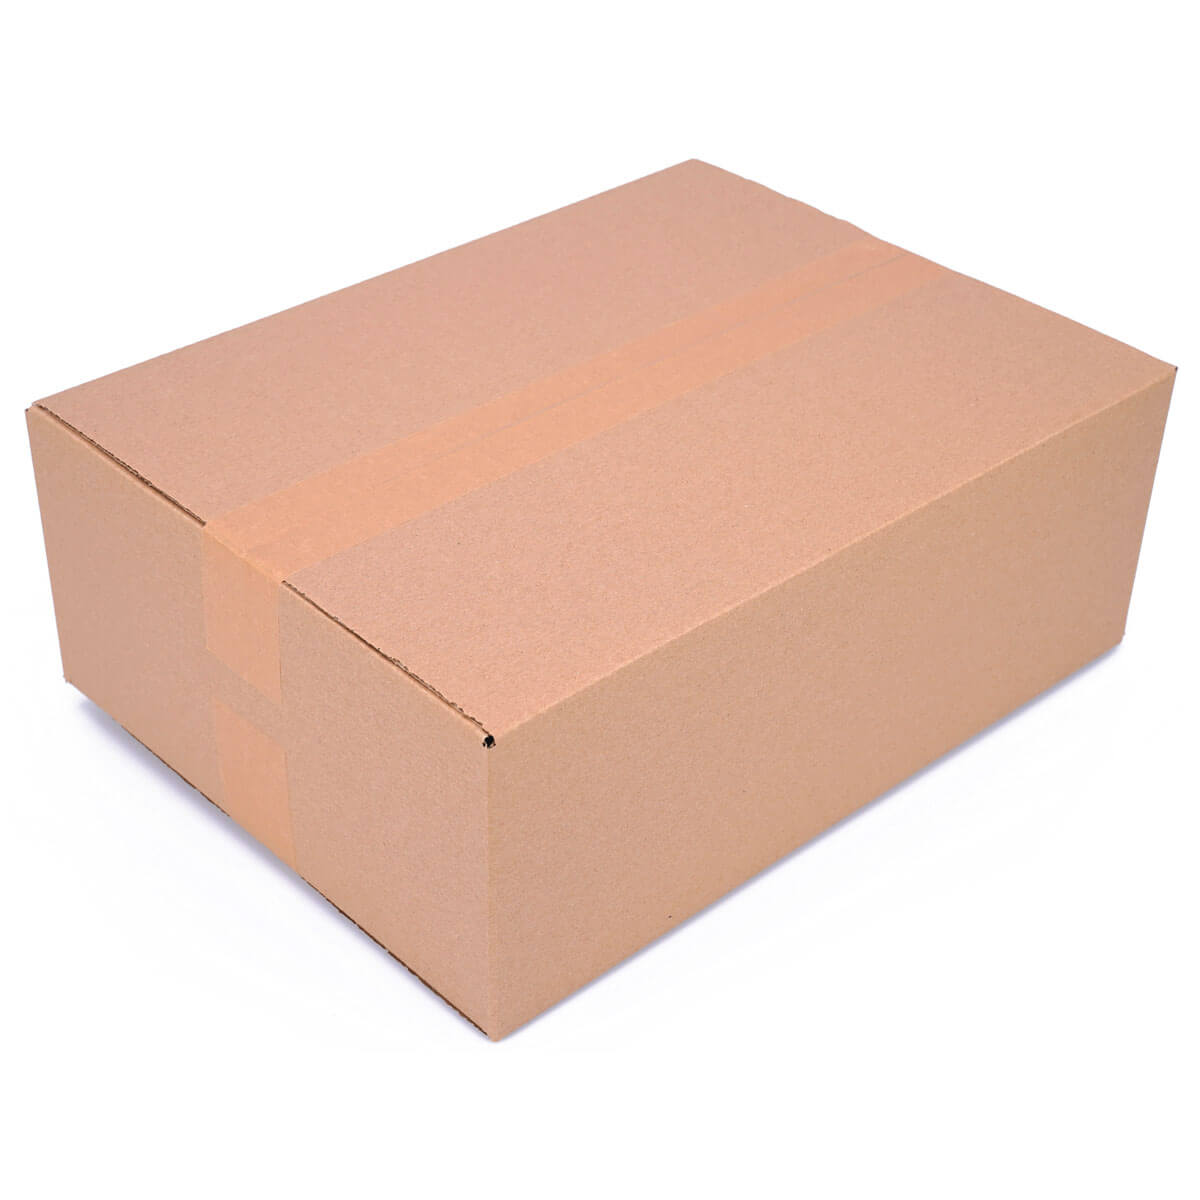 Folding carton 395x295x140 mm - KK 87